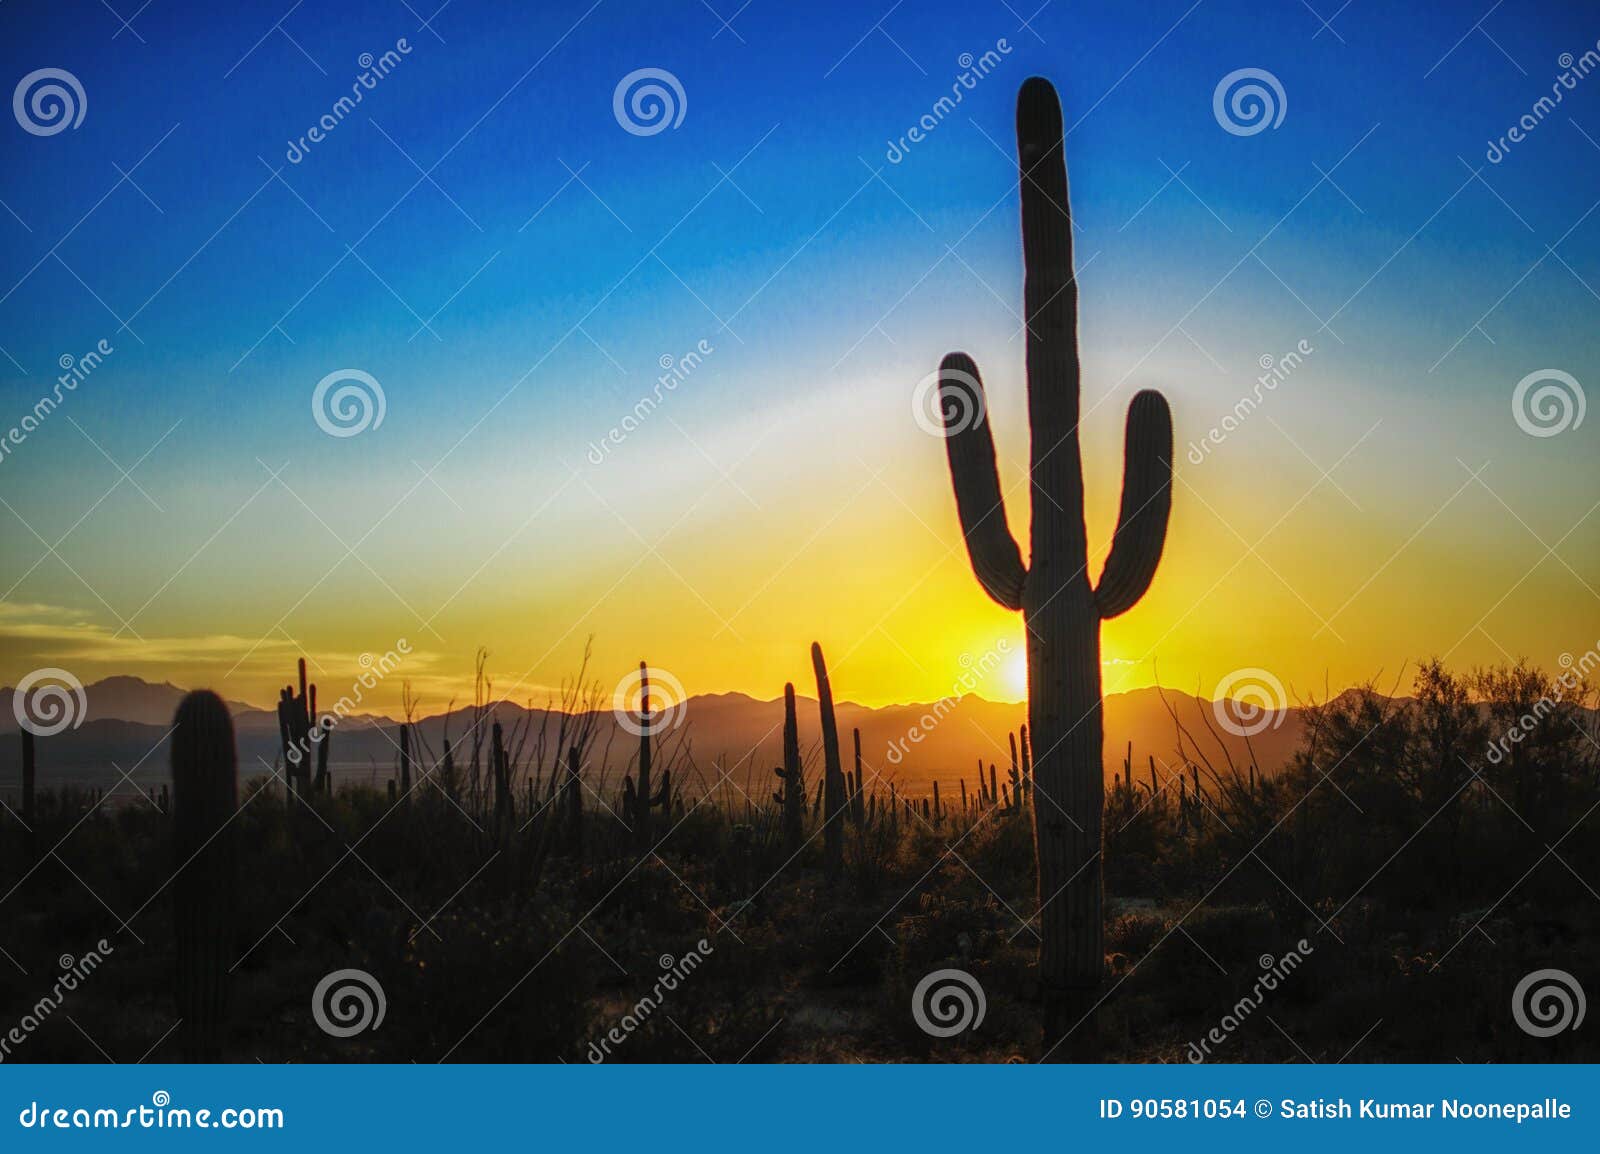 Sunset at the Saguaro National Park, Tucson AZ Stock Photo - Image of ...